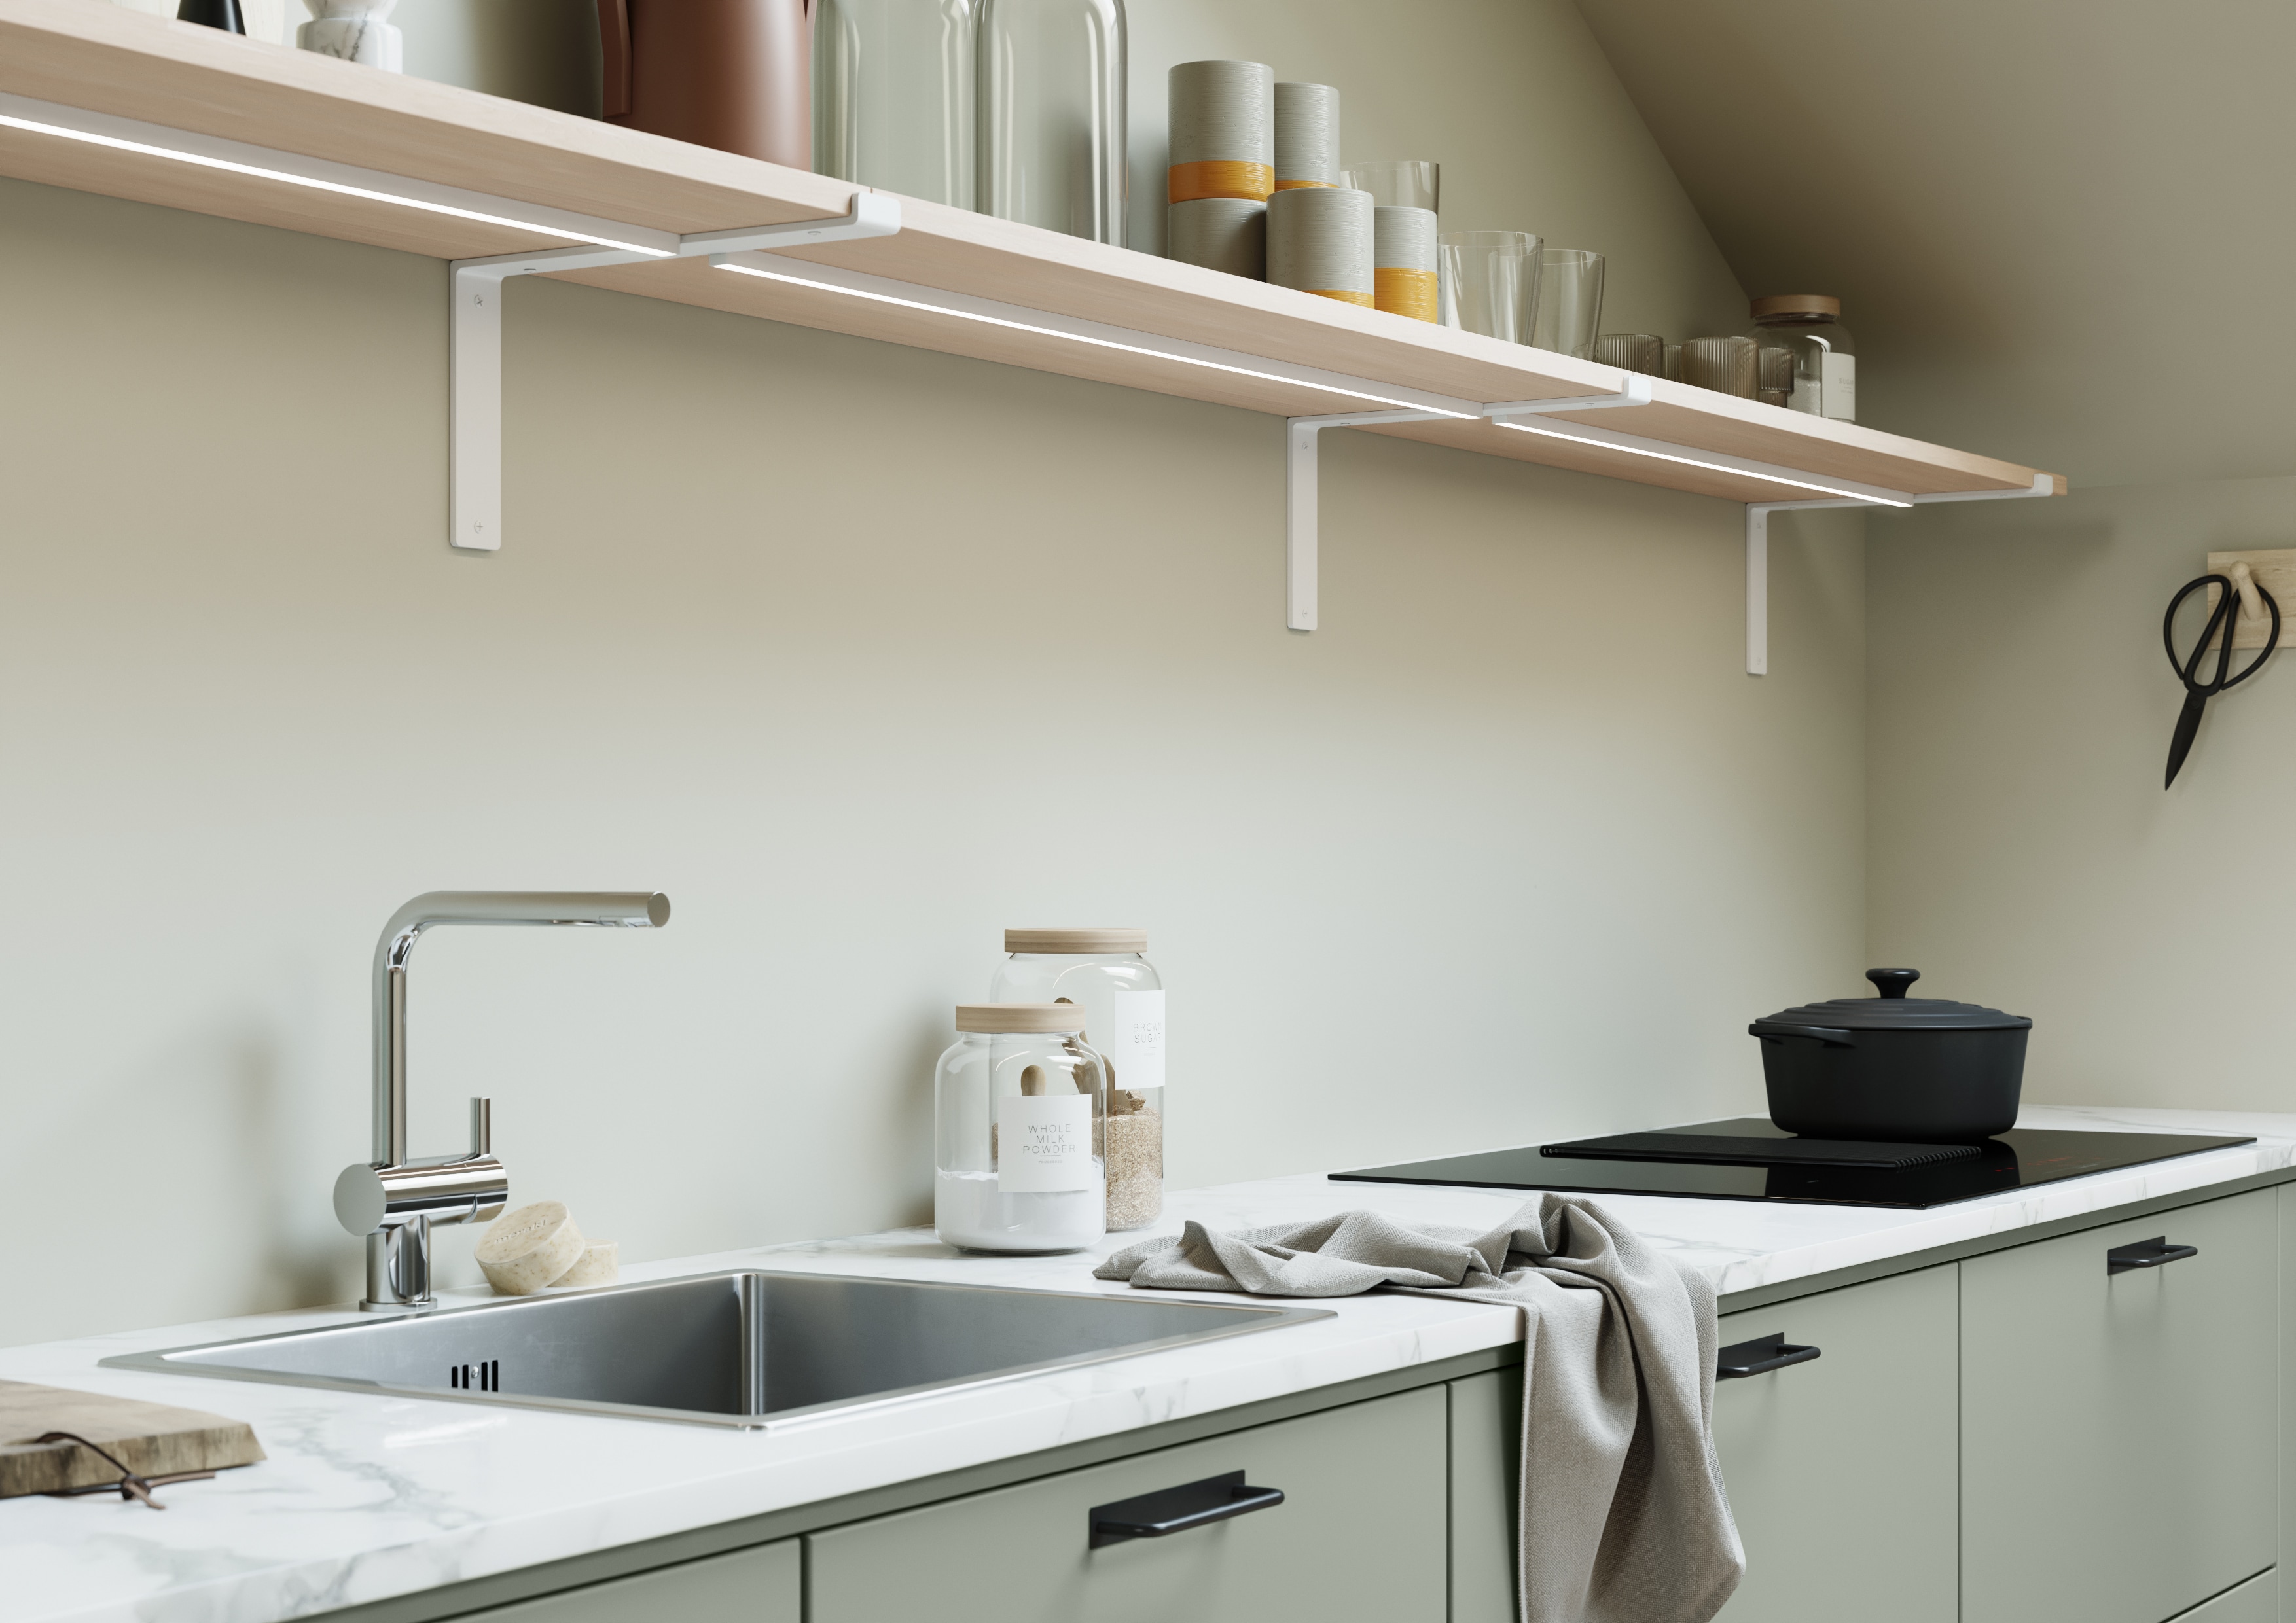 Lysegrønt EPOQ Trend-køkken med hvid marmor bordplade, stålvask, kogeplade med indbygget enhætte og svævehylde